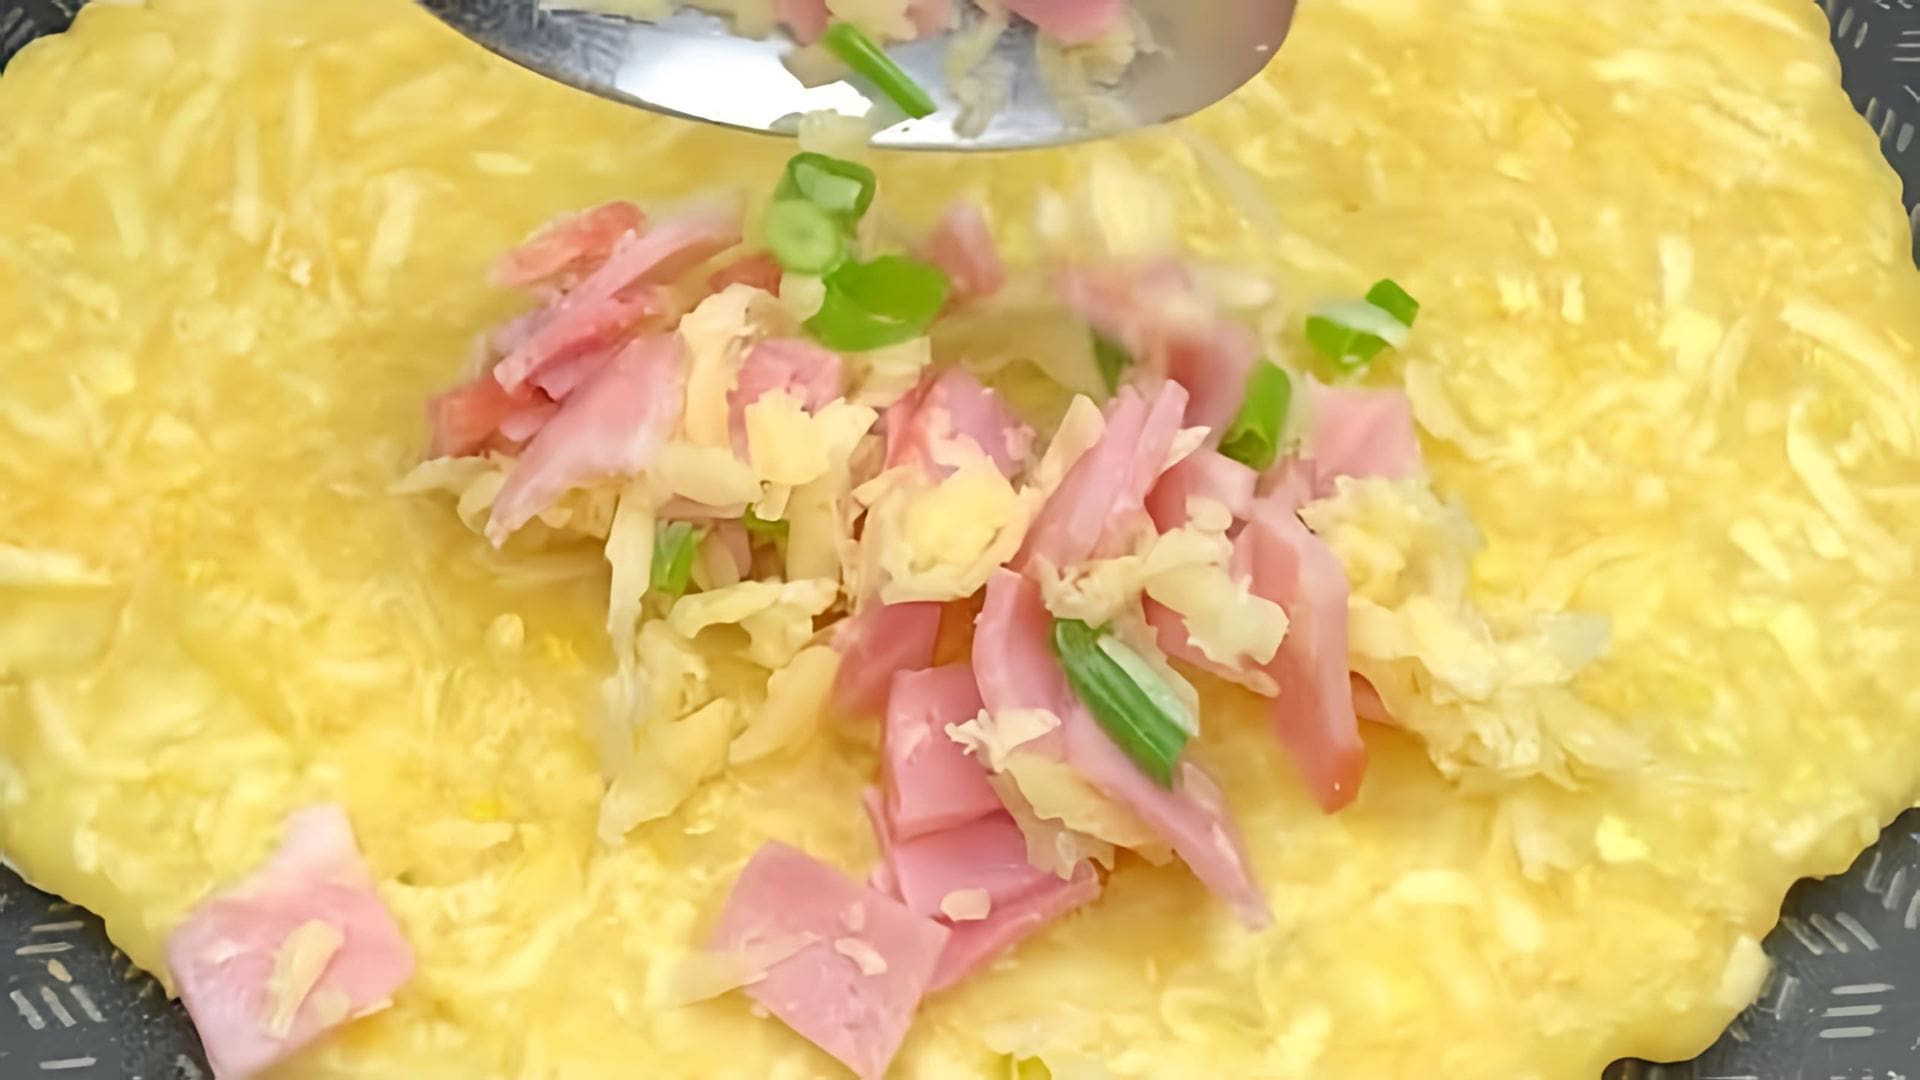 В этом видео демонстрируется процесс приготовления чебуреков из кабачка с ветчиной и сыром